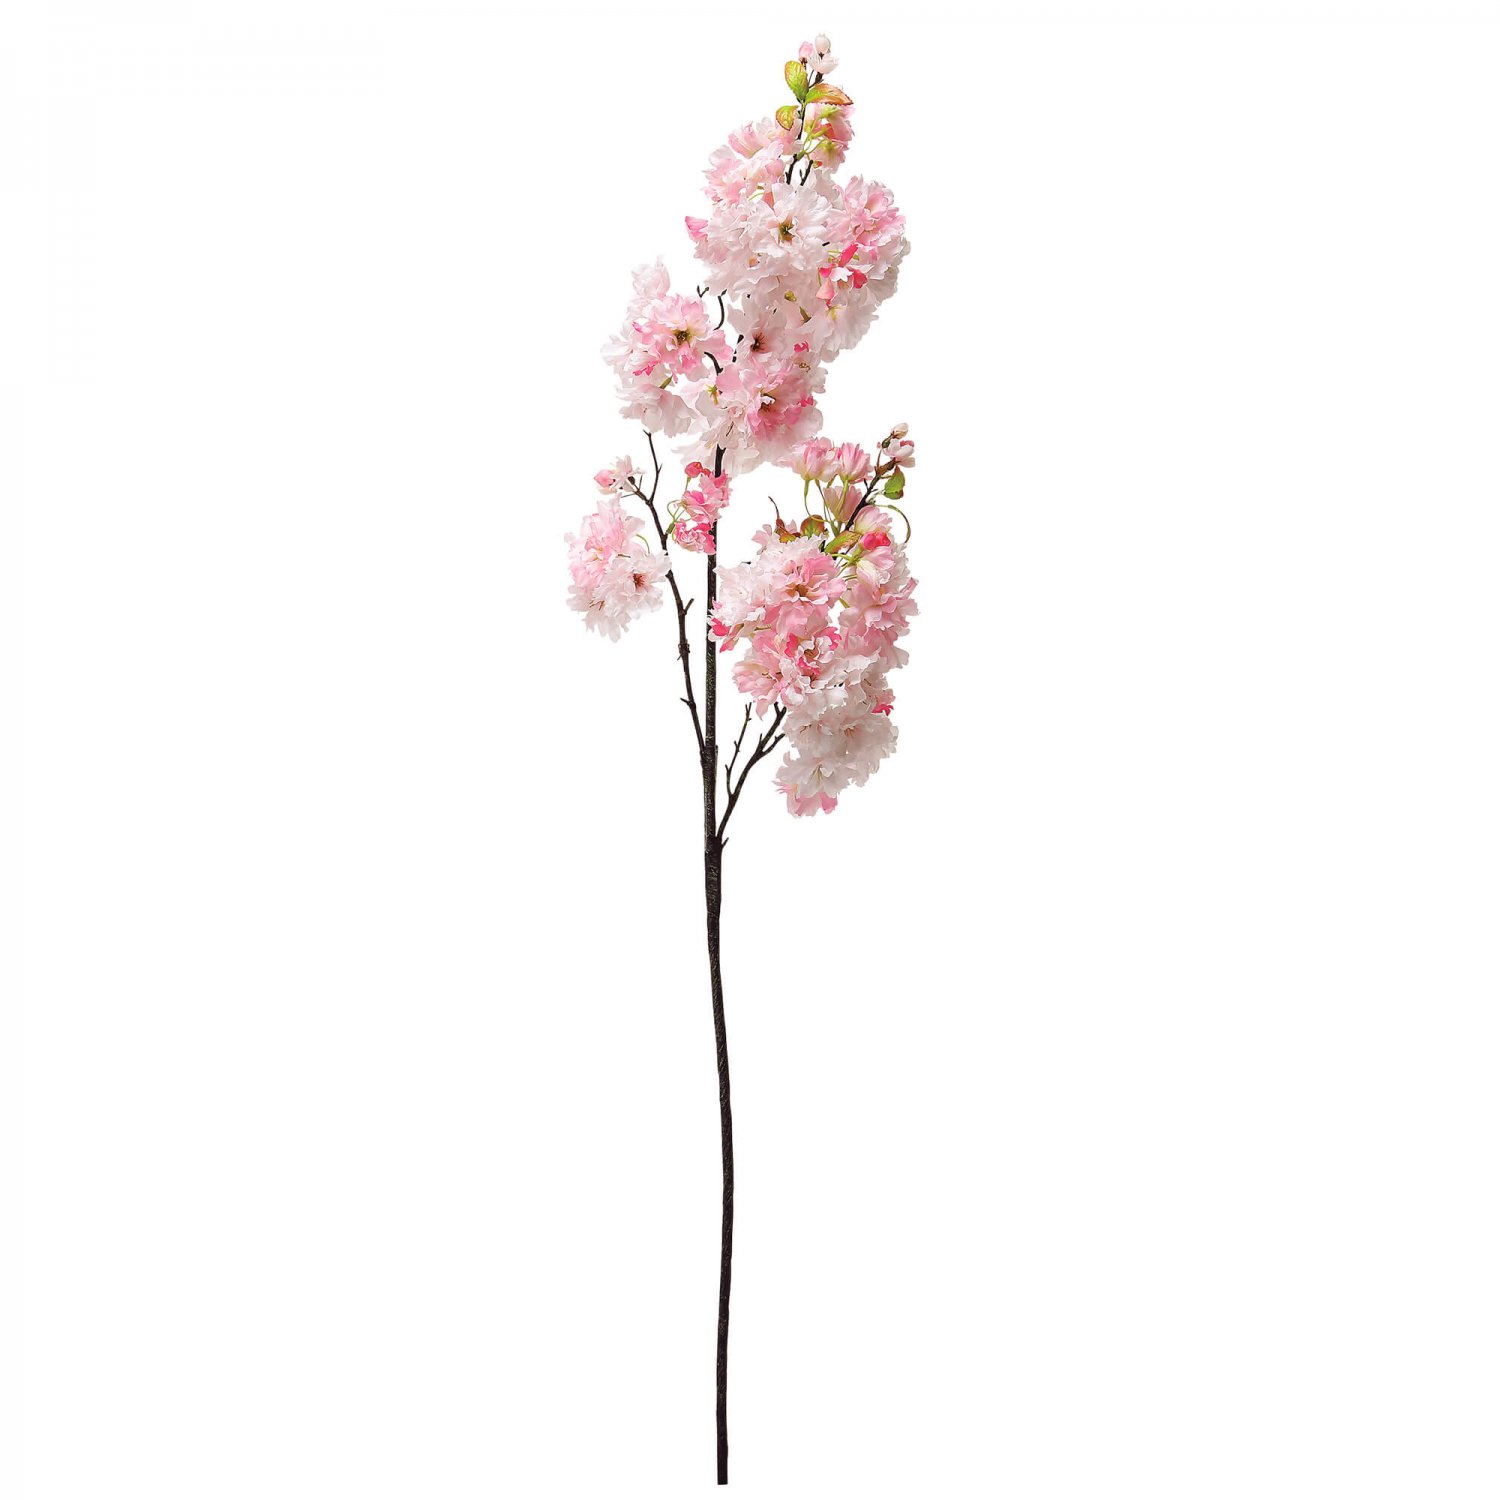 八重桜 八分咲き ライトピンク 単品花材 アーティフィシャルフラワー 造花 フェイクグリーン専門店プリマ 通販